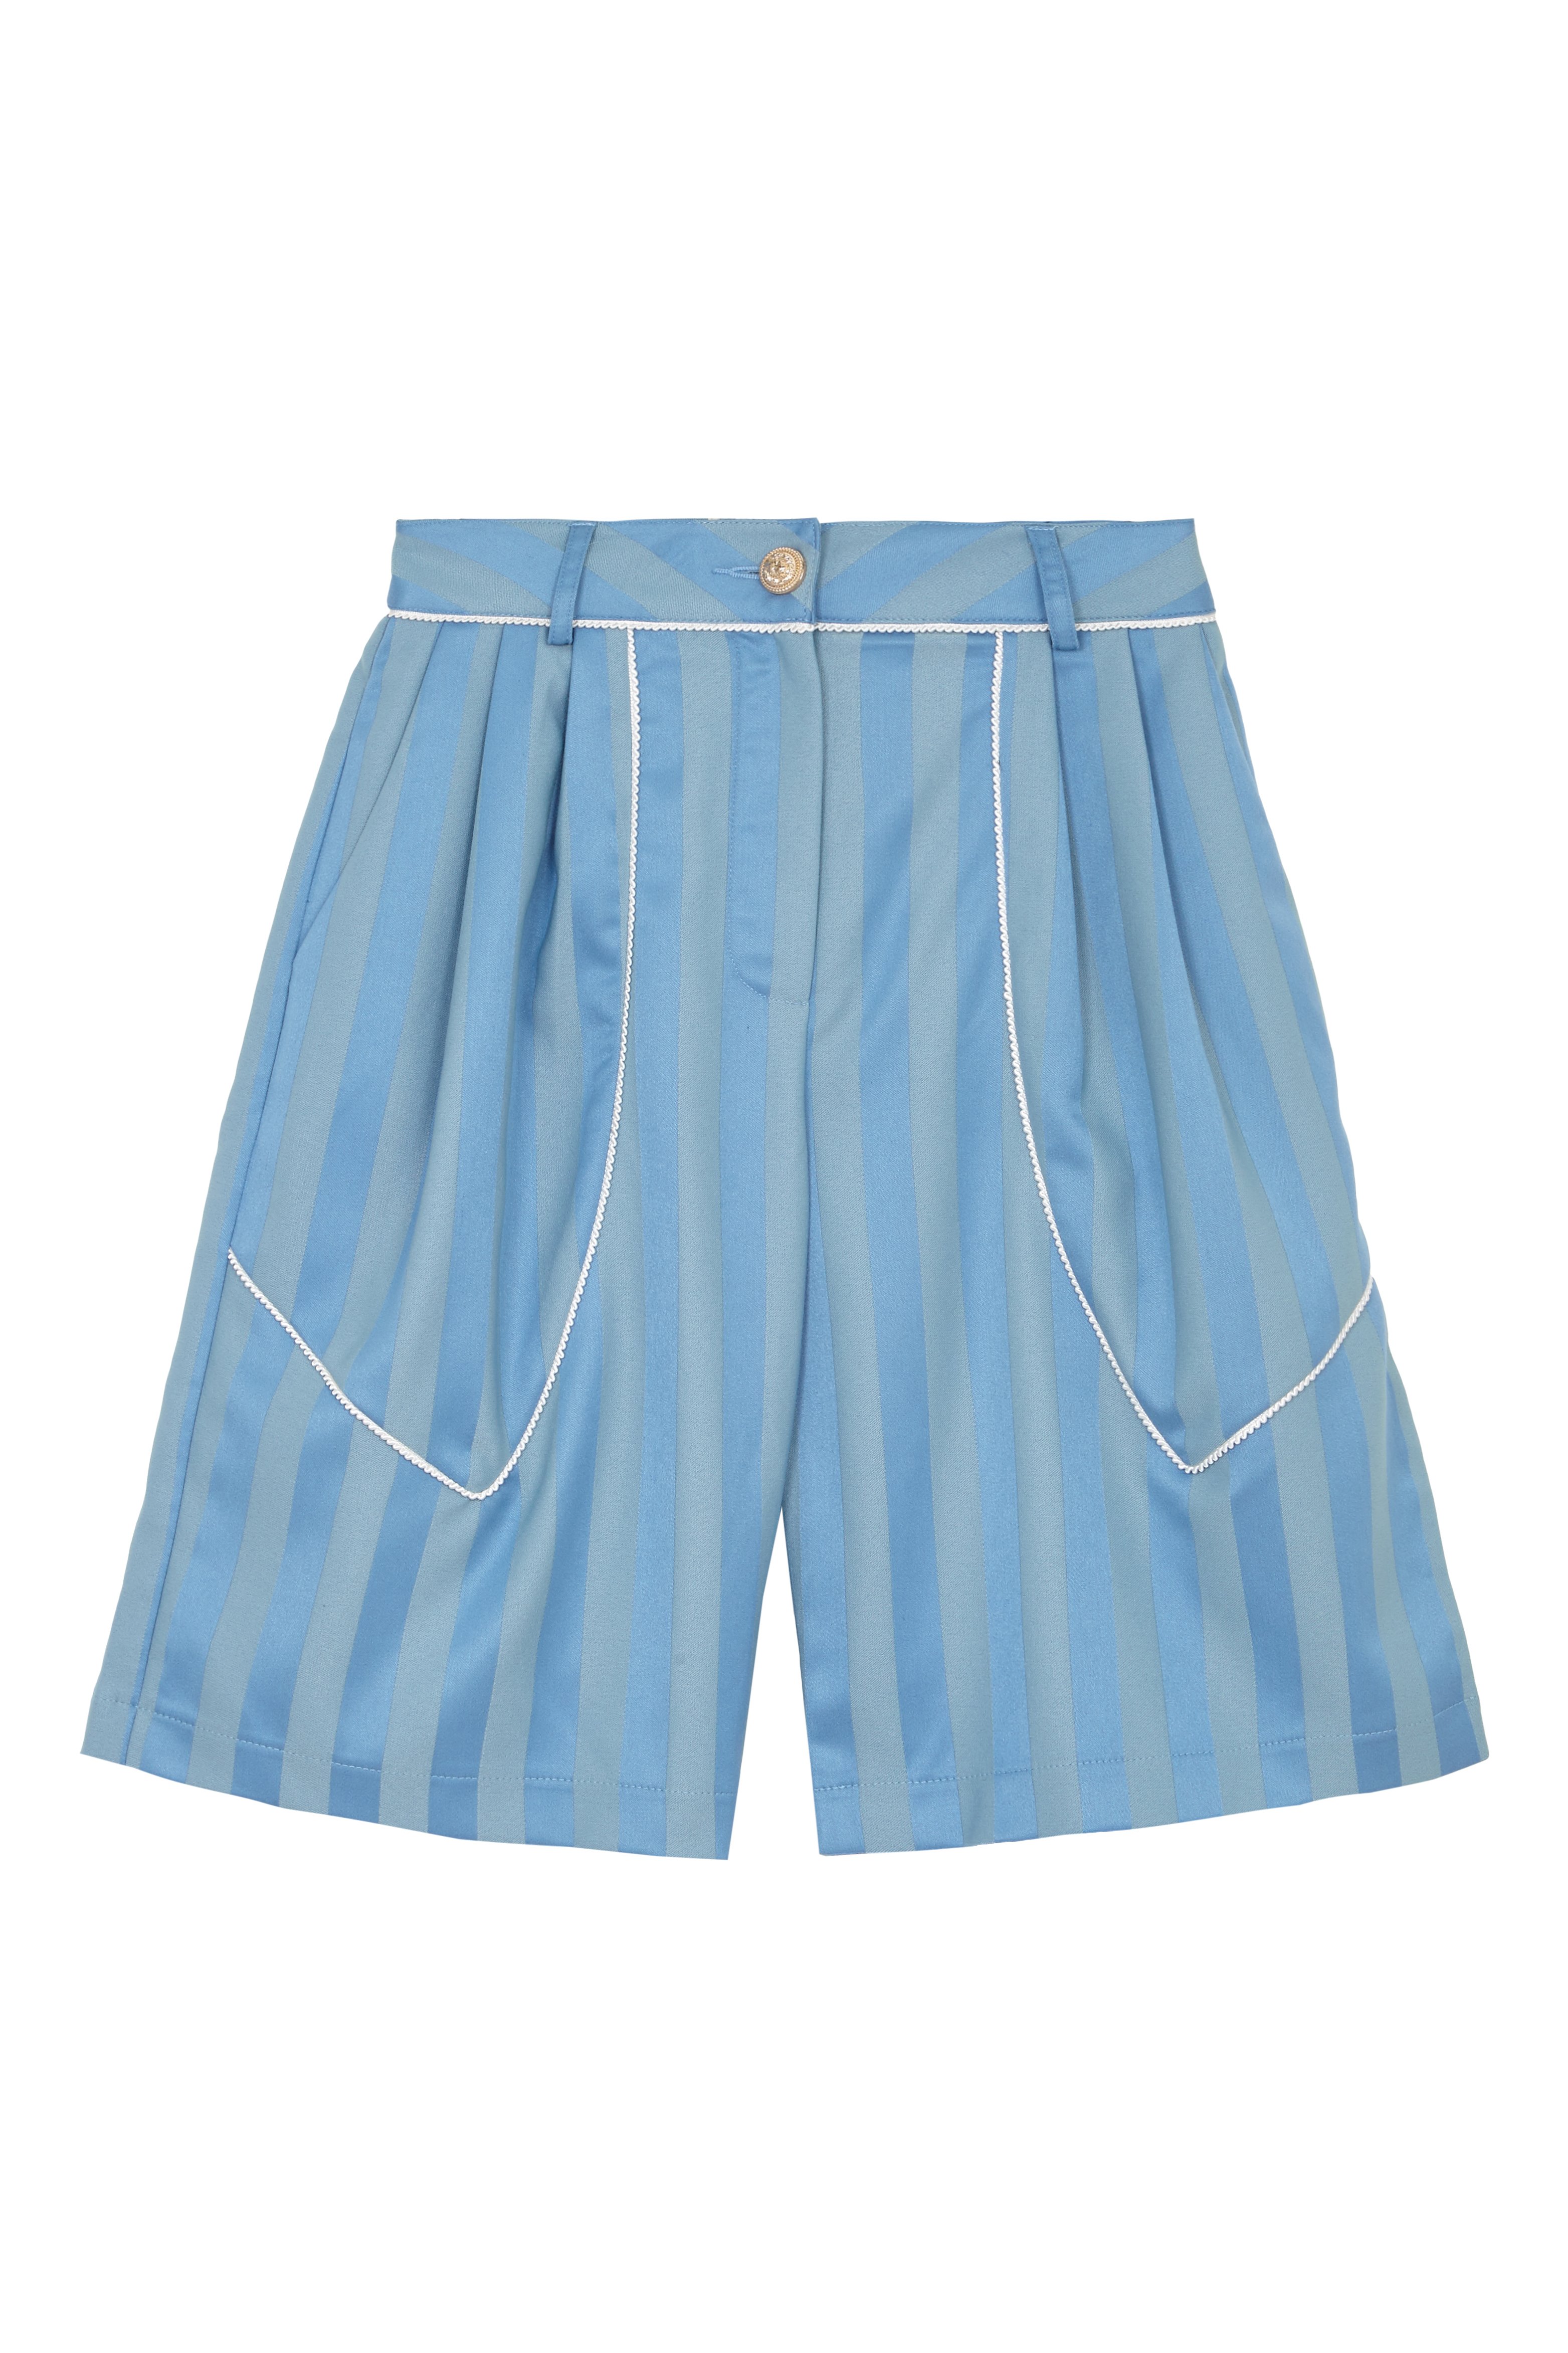 Ghospell Bummer Blue Shorts